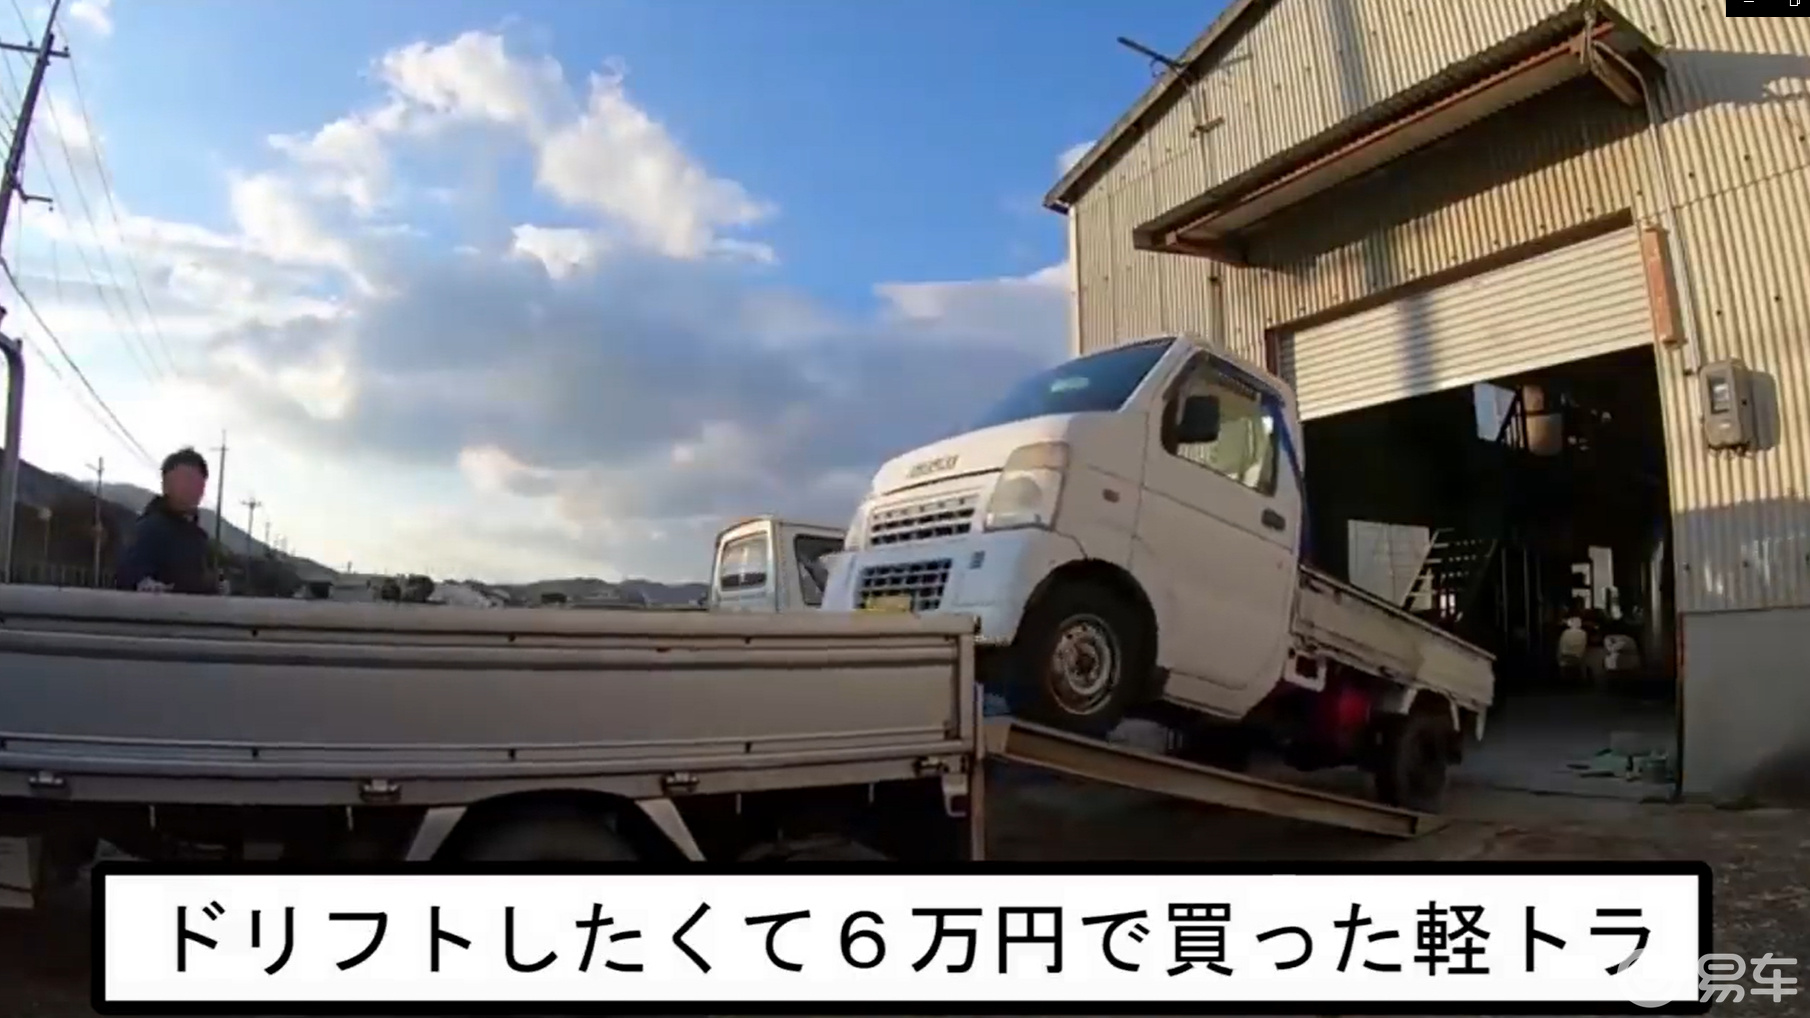 日本kcar小货车,改装v4摩托车引擎,成为漂移神器